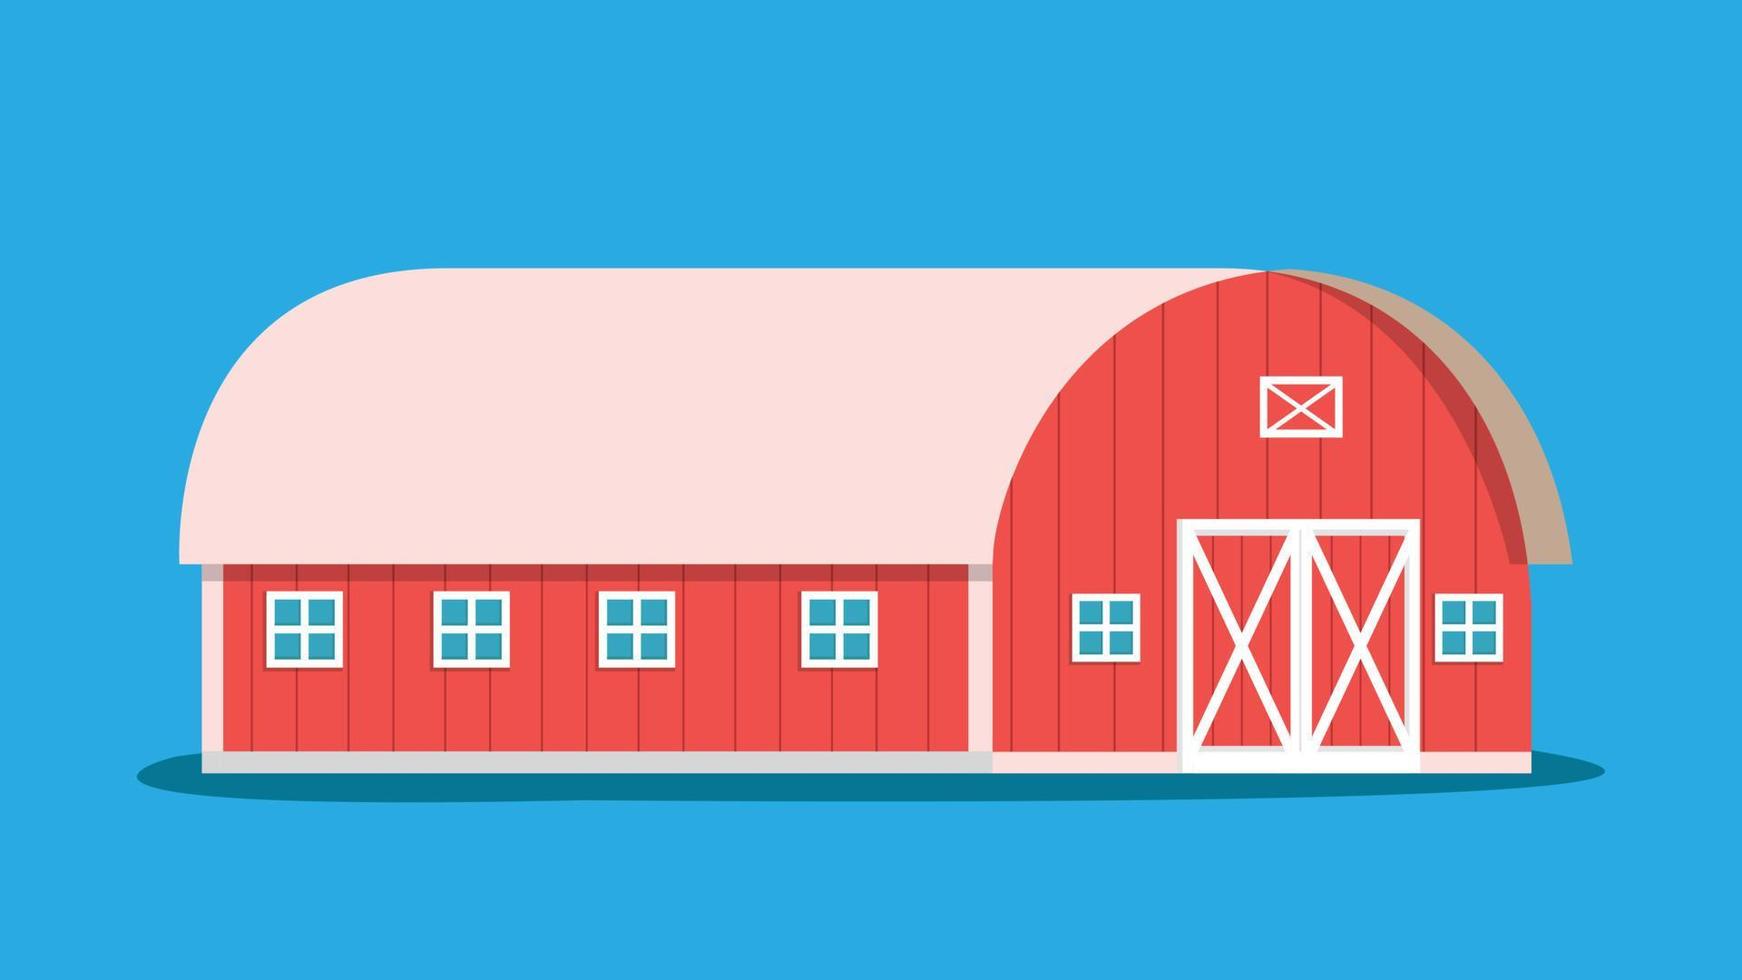 Landwirtschaft Scheune isoliert Hintergrund Vektor illustration.Farm Gebäude mit blauem Hintergrund